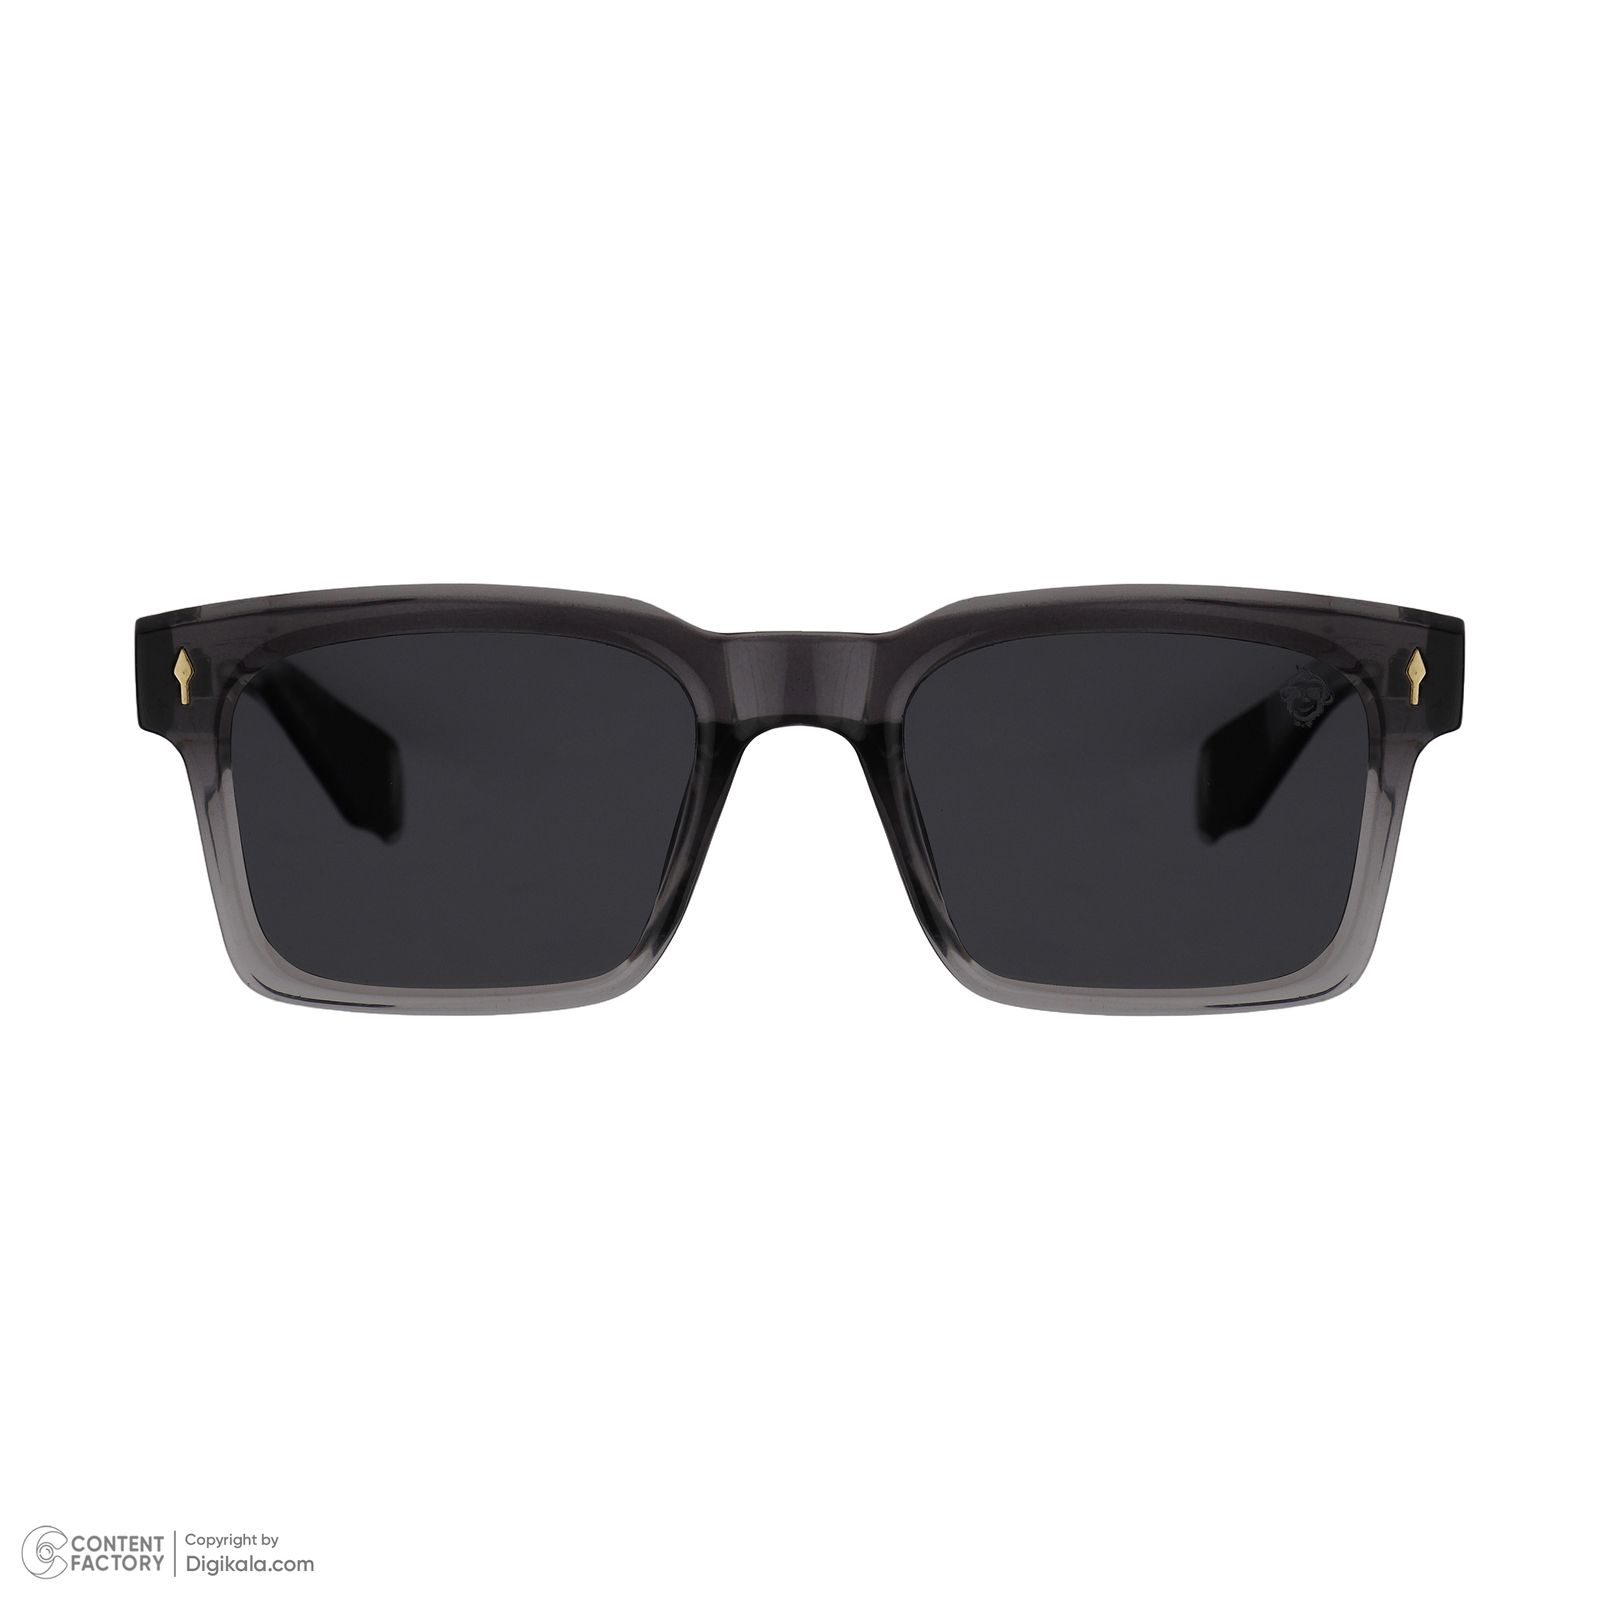 عینک آفتابی مستر مانکی مدل 6025 gr -  - 3